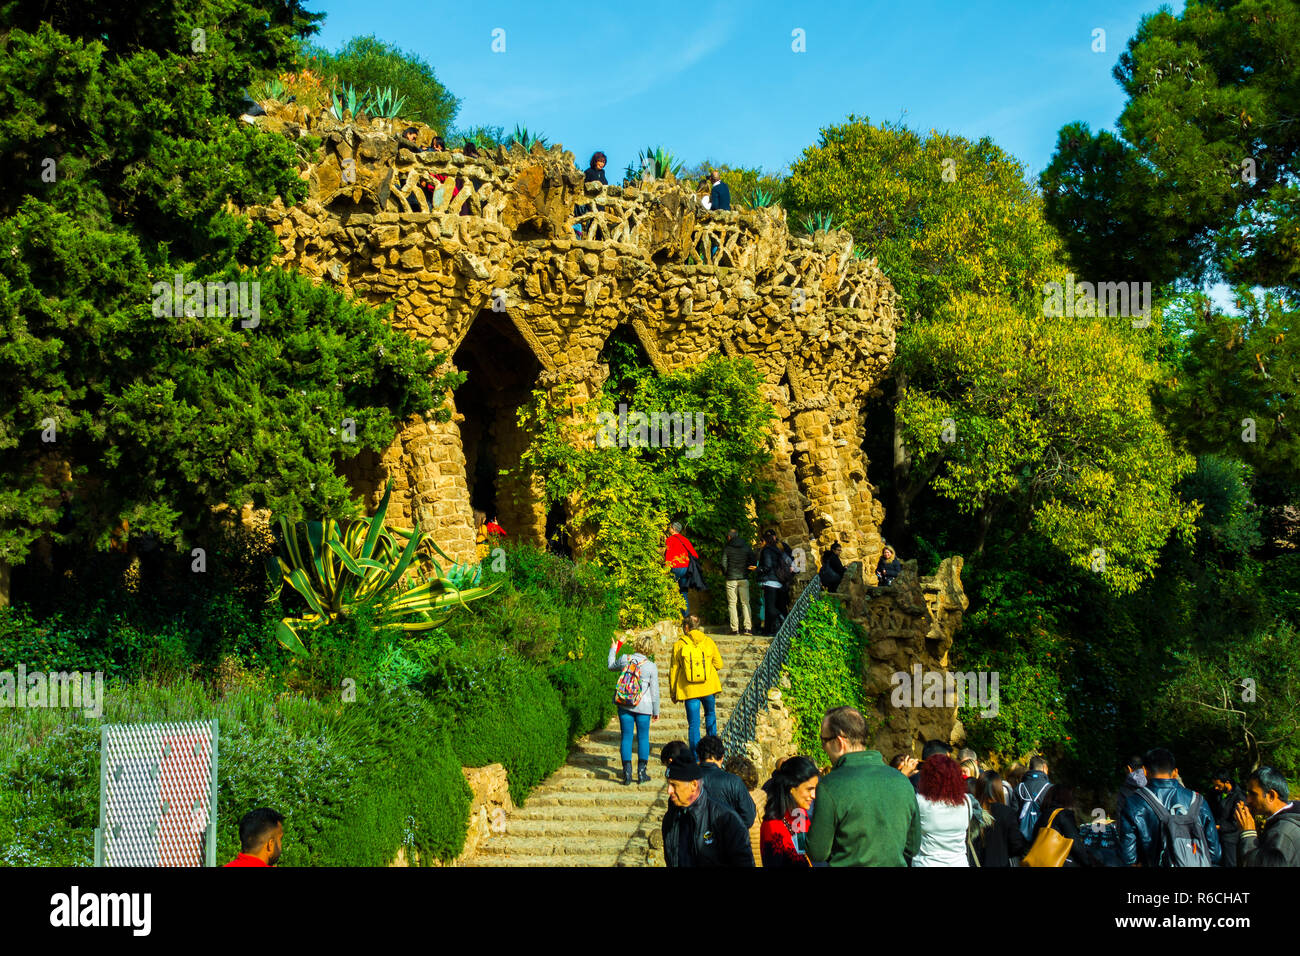 Barcelona, Katalonien, Spanien - Dezember 01, 2018: Park Güell von dem Architekten Gaudi. Parc Güell ist der wichtigste Park in Barcelona. Stockfoto